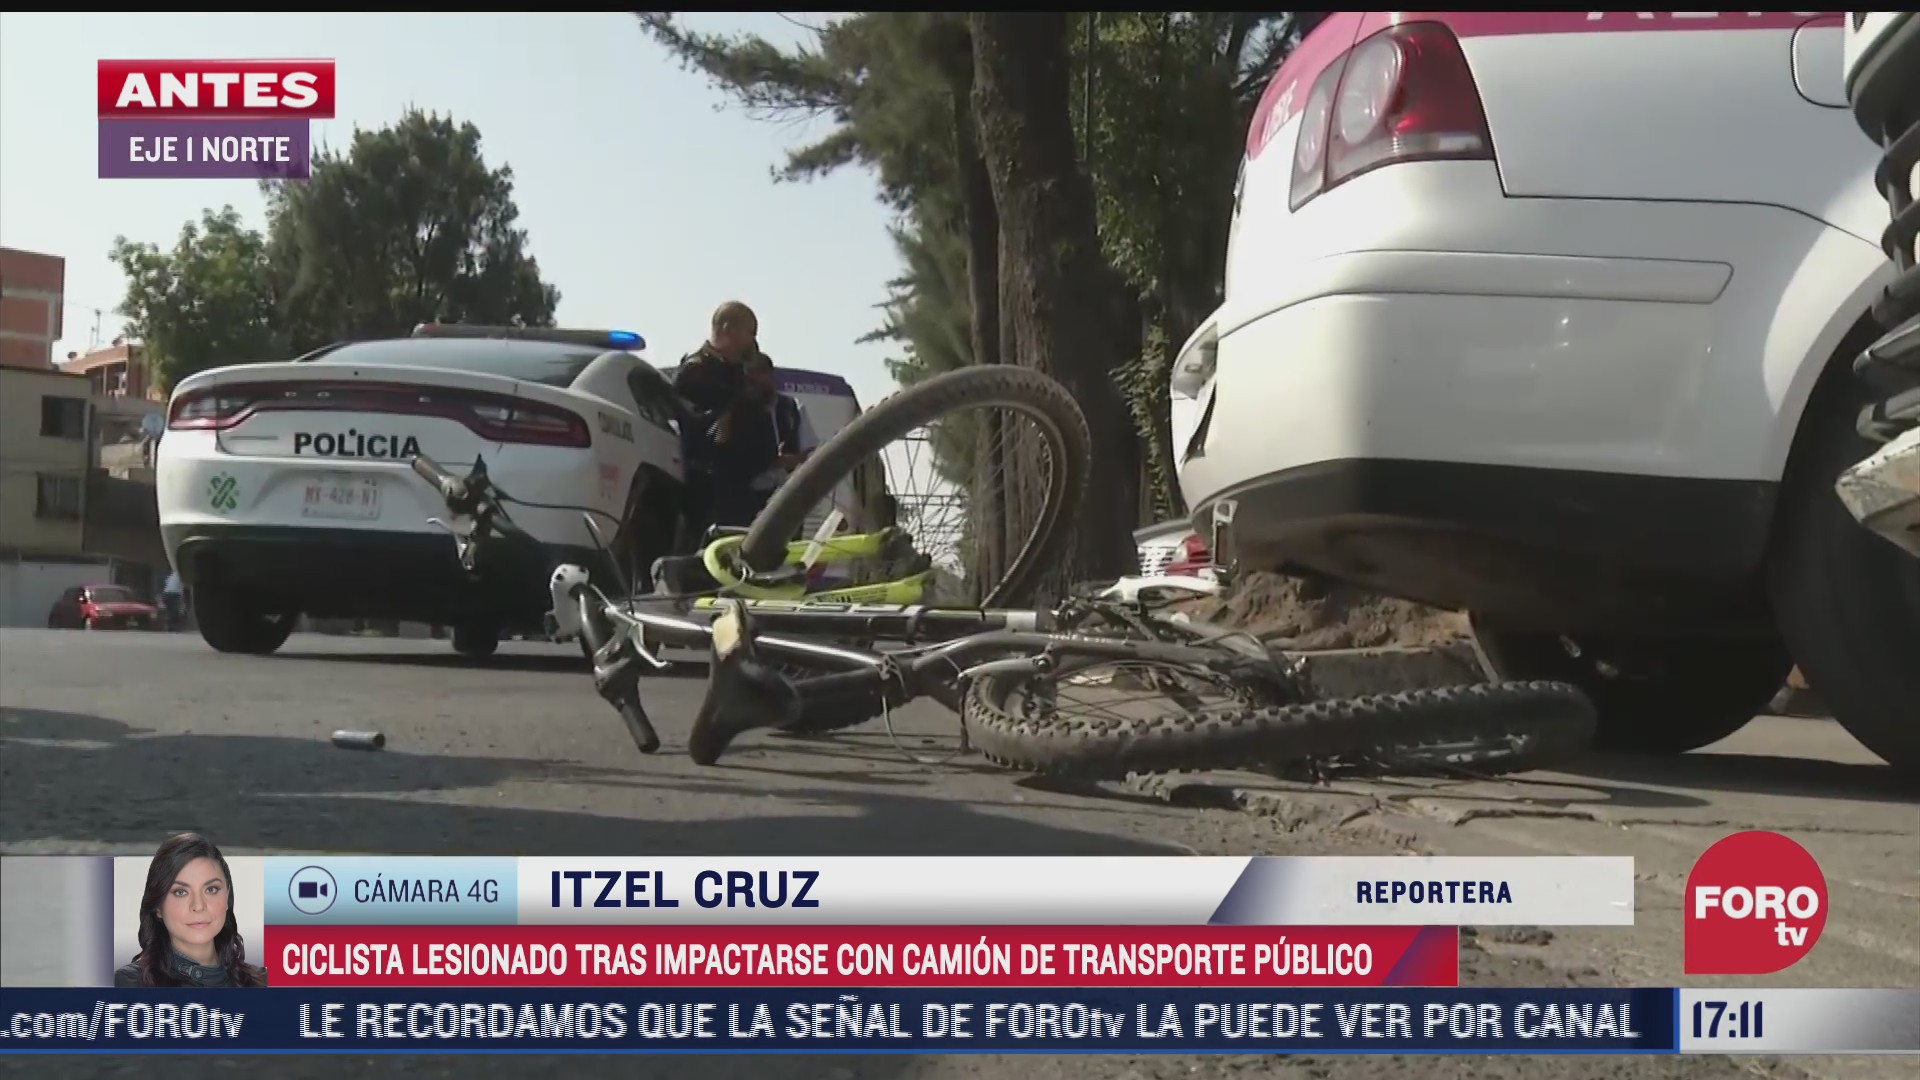 camion de transporte publico atropella a ciclista en eje 1 norte